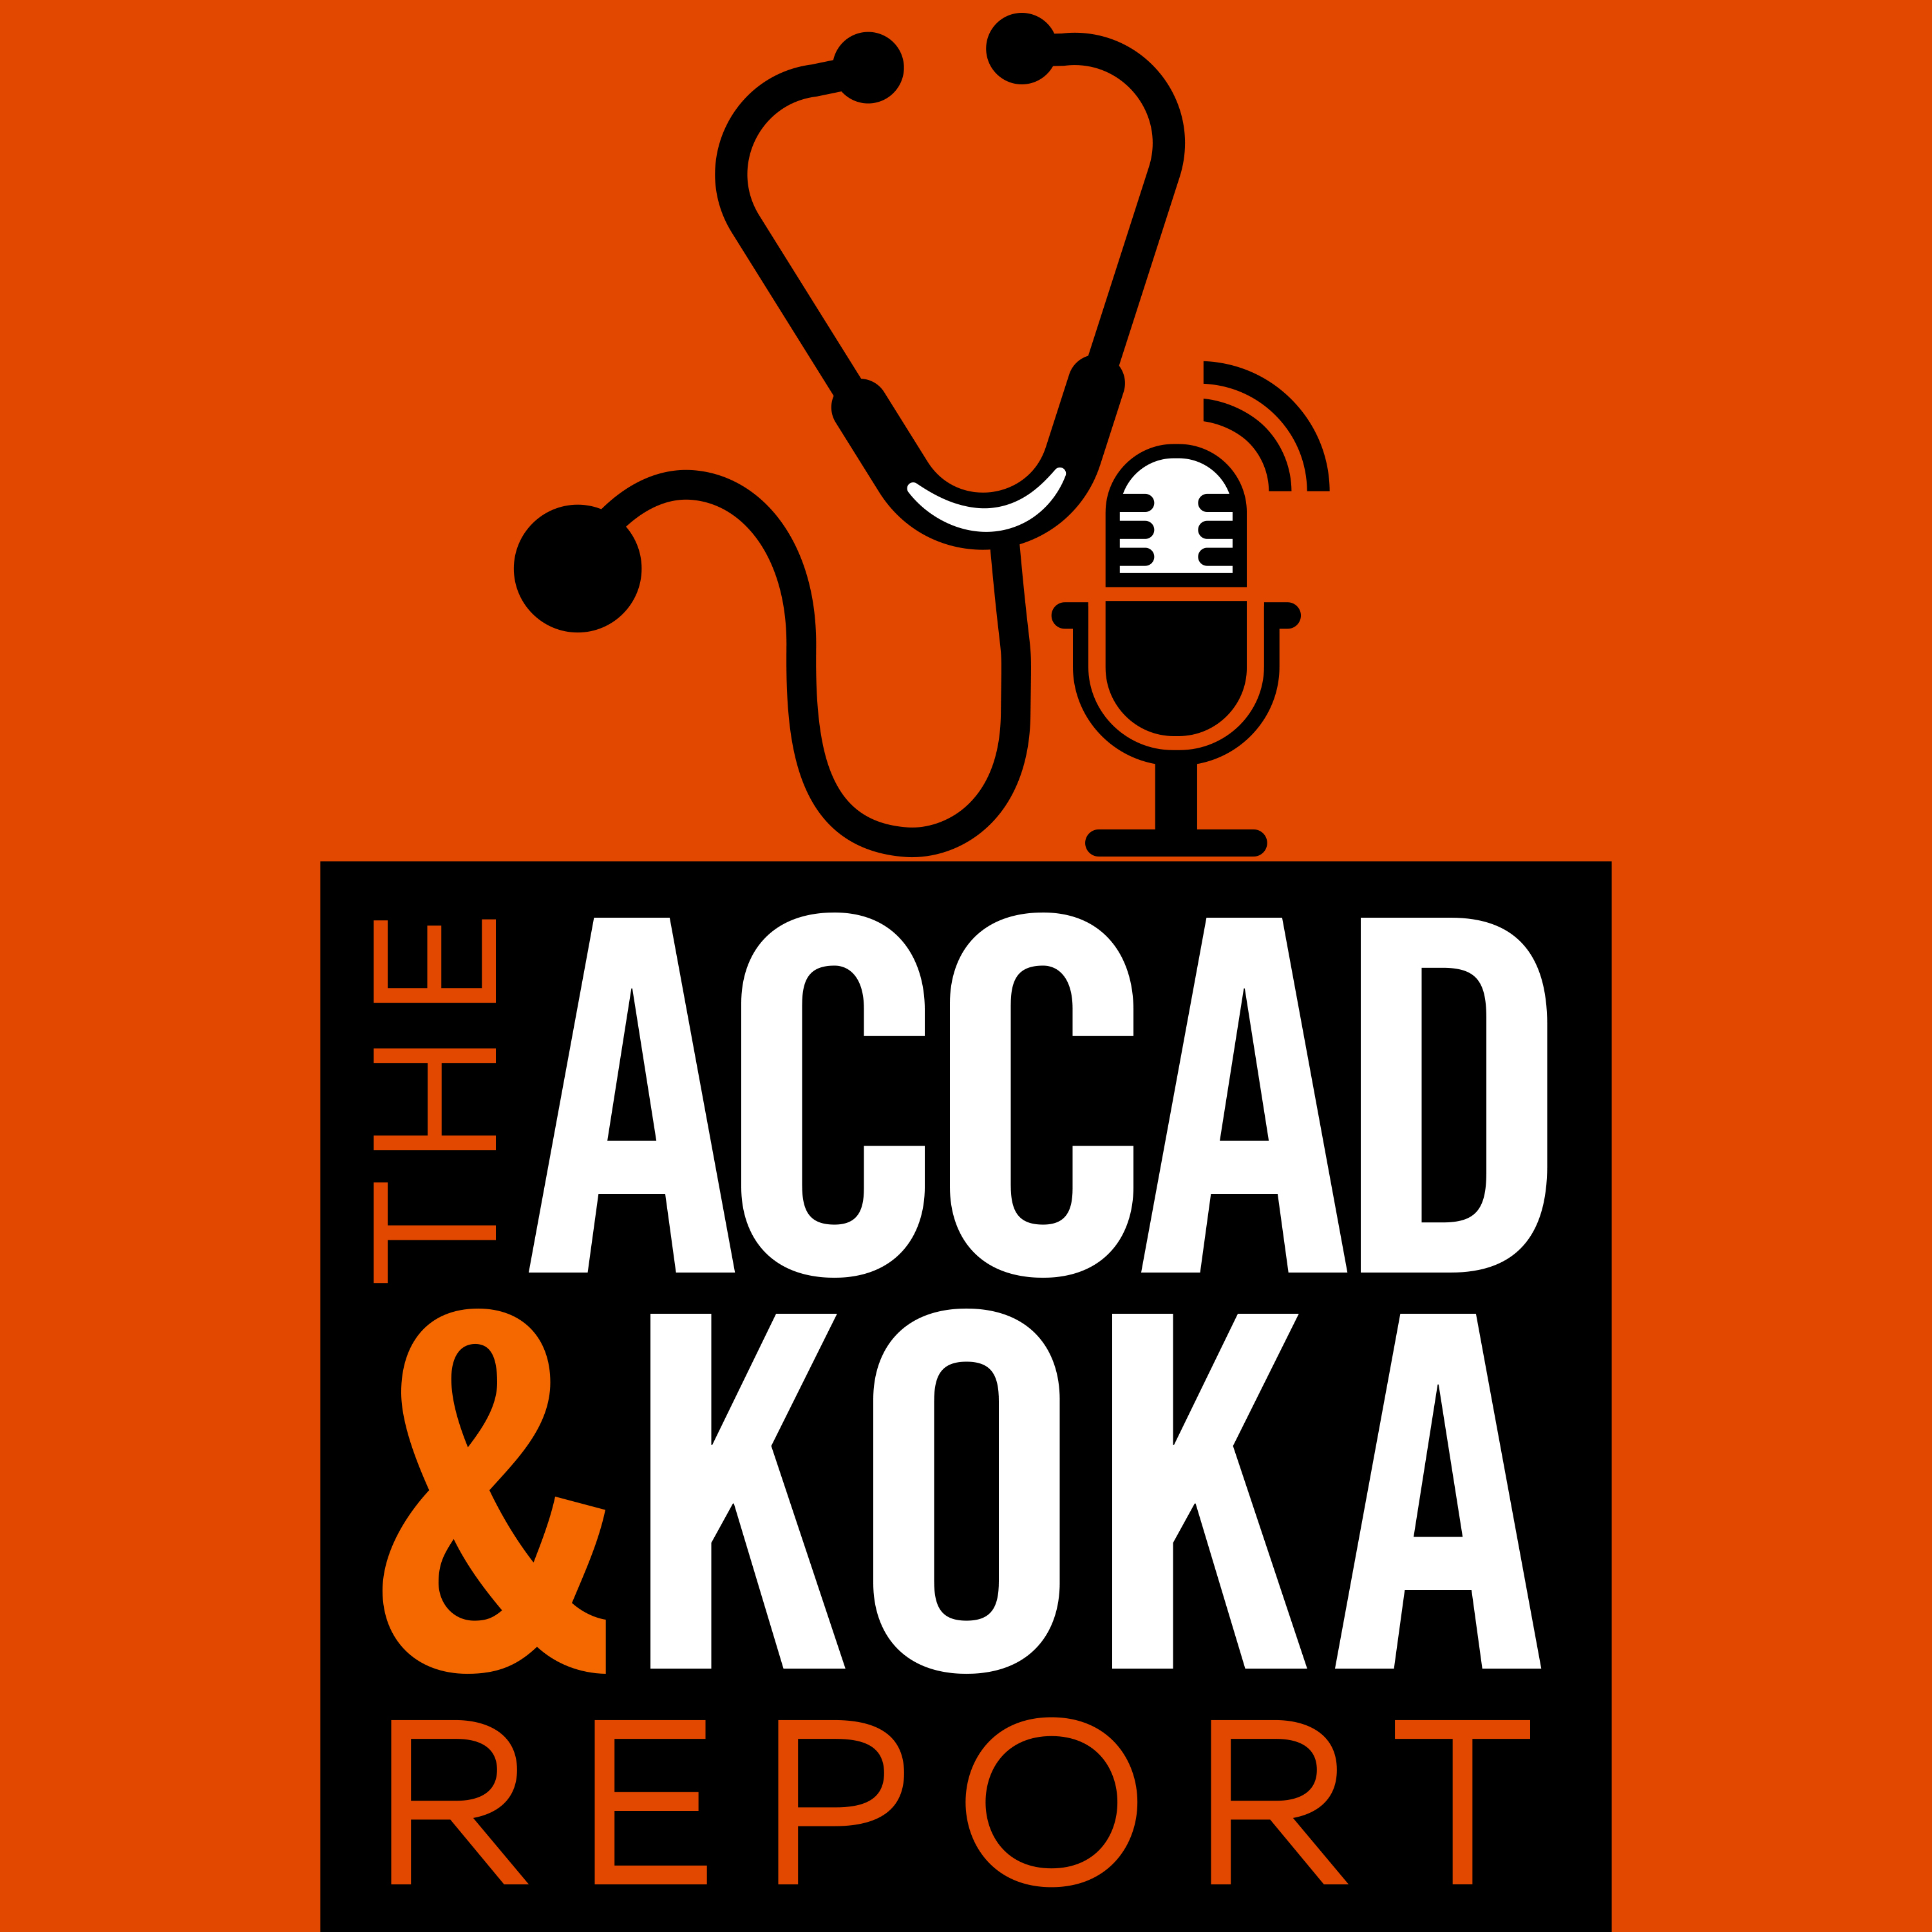 The Accad and Koka Report